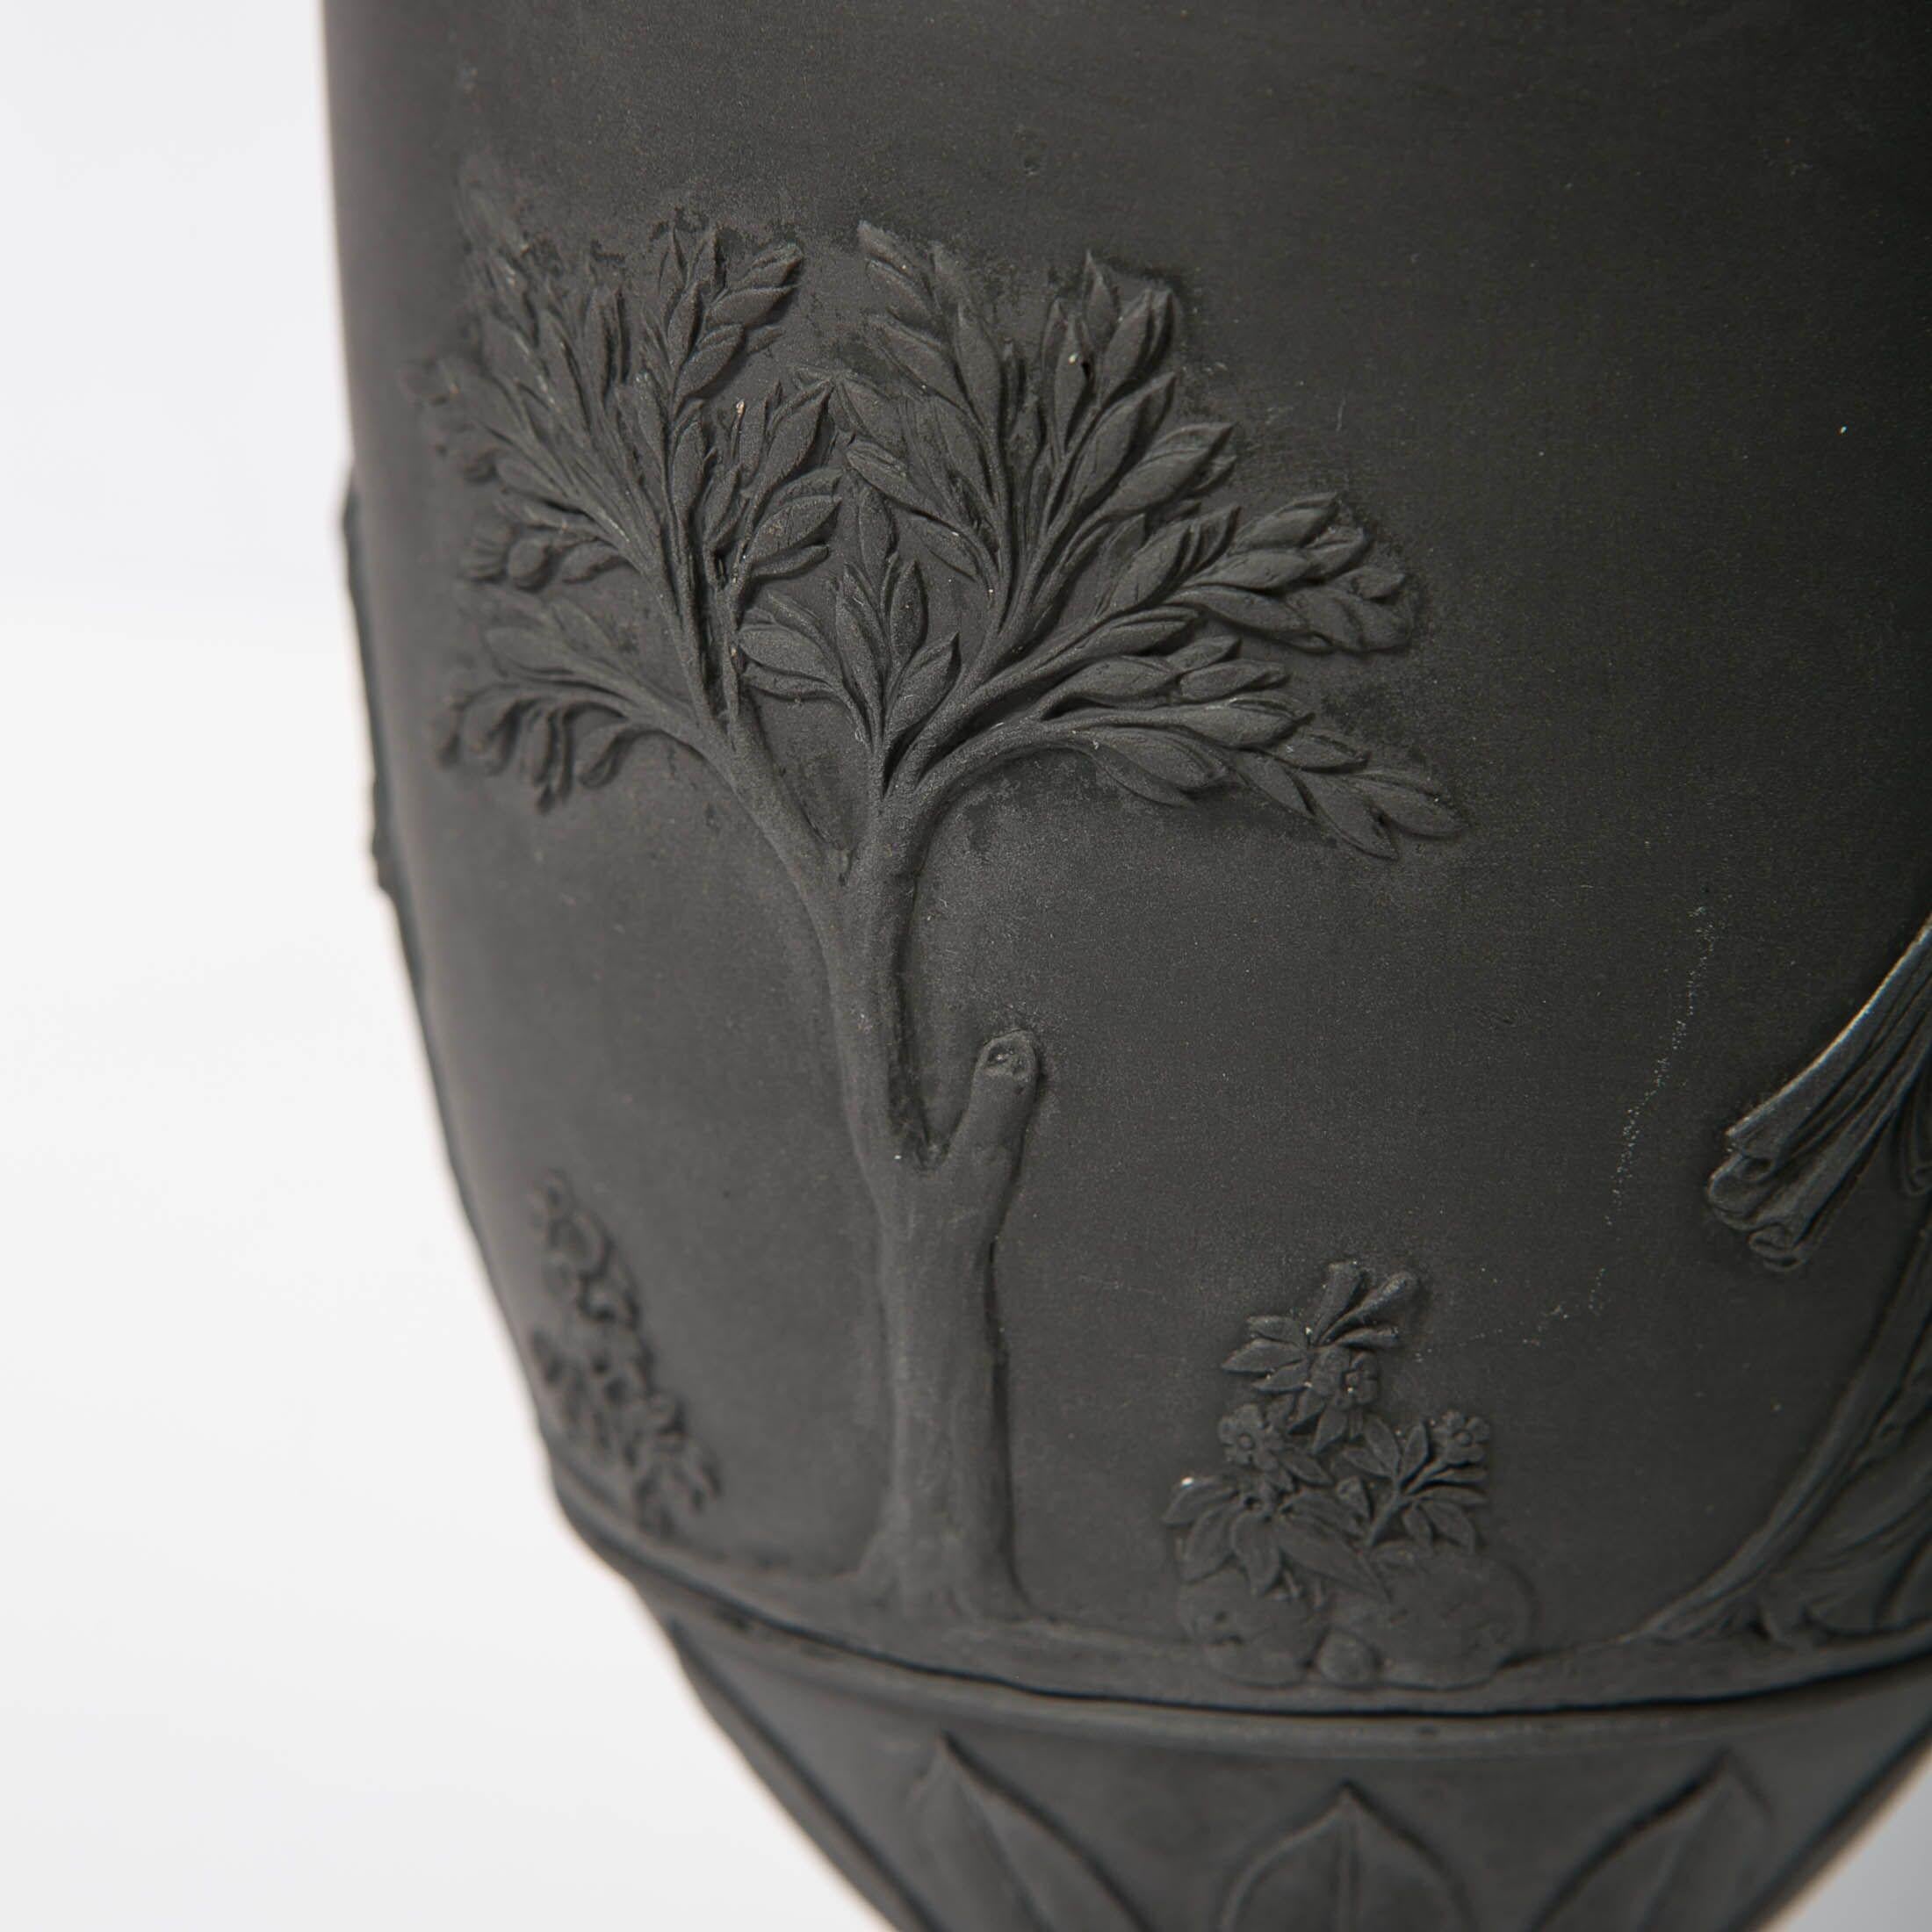 black wedgwood vase